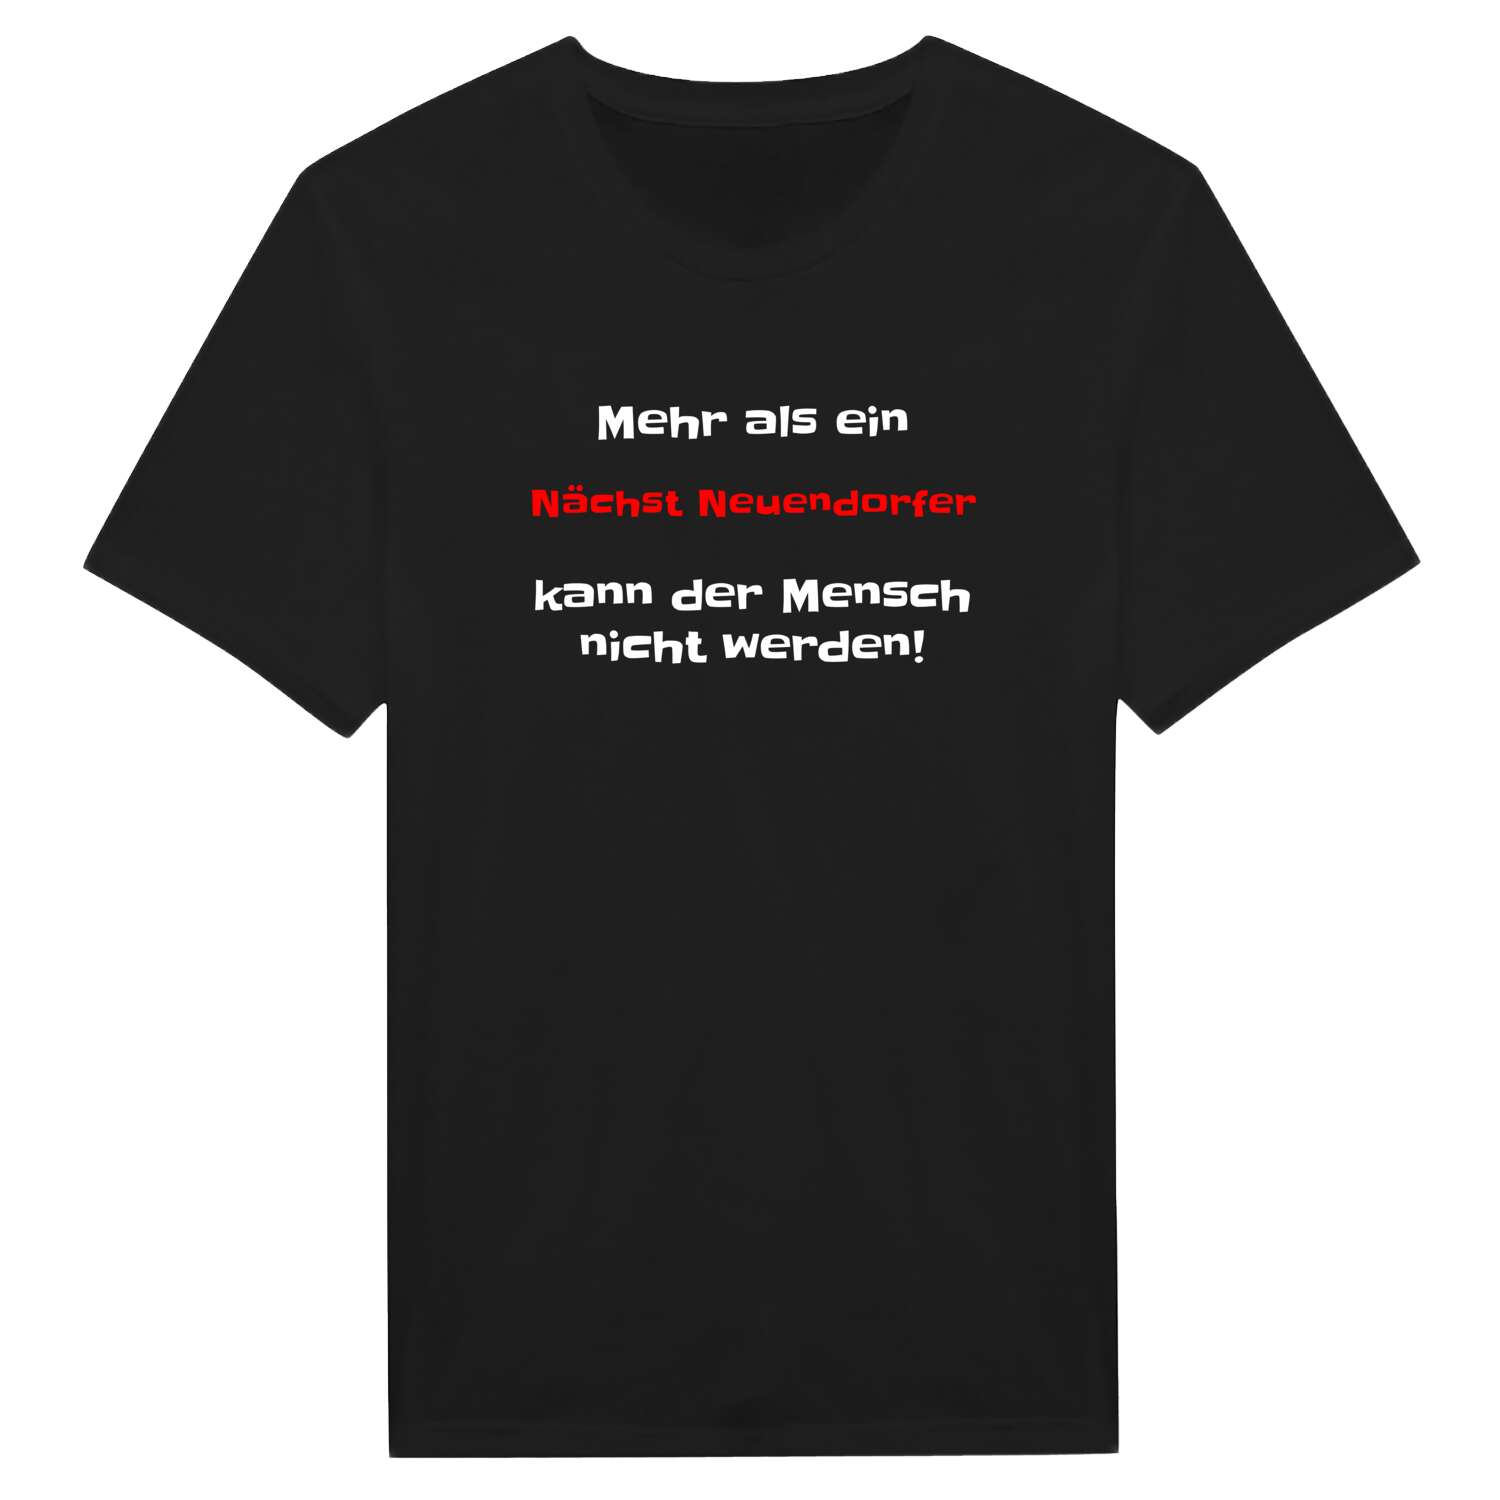 Nächst Neuendorf T-Shirt »Mehr als ein«